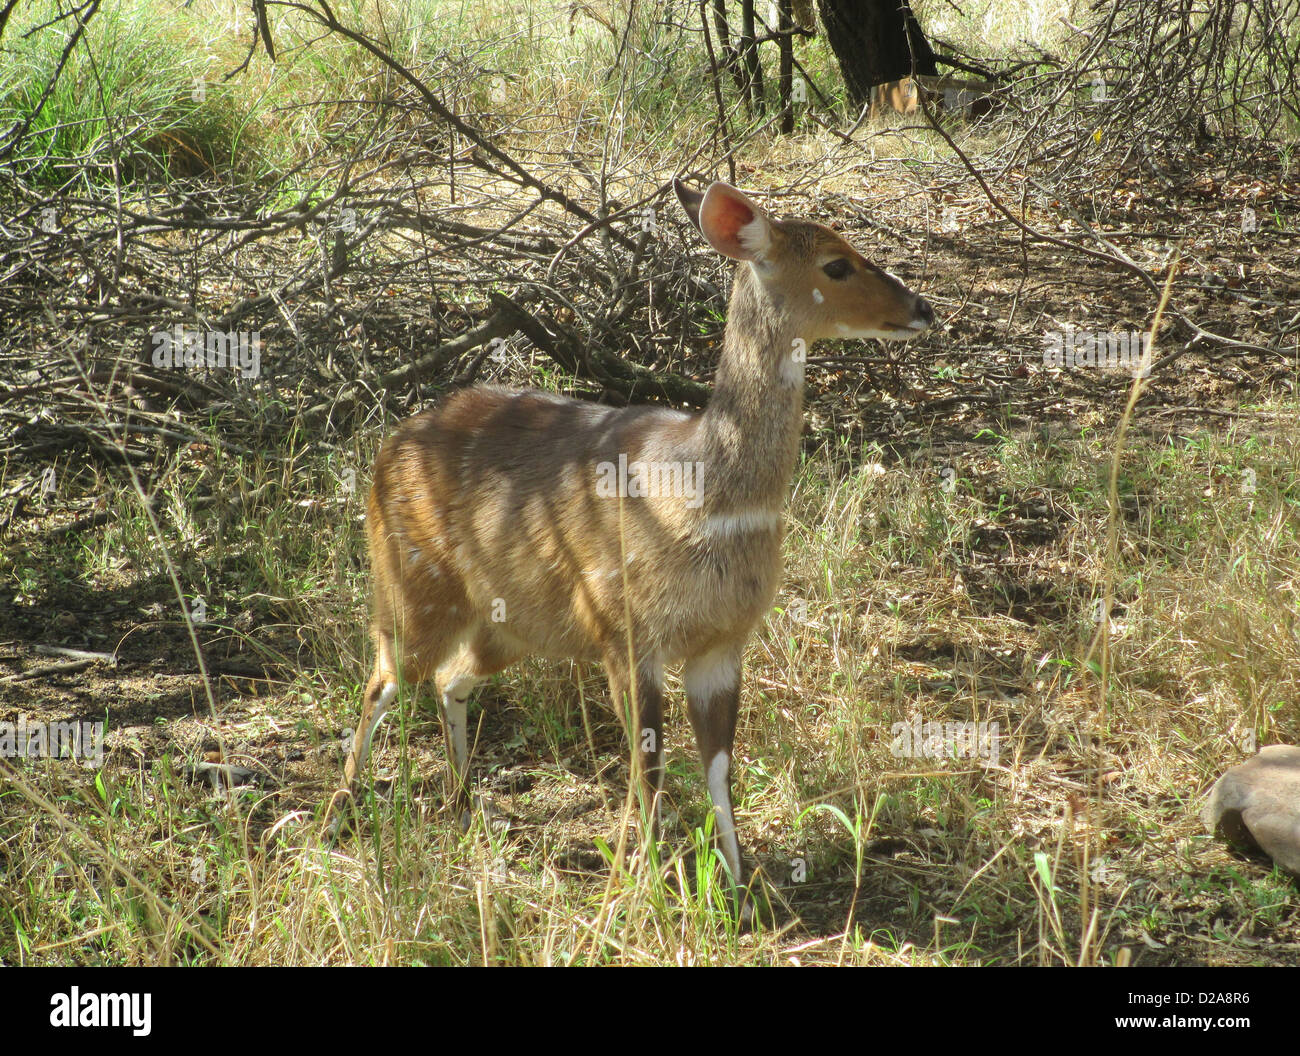 NYALA (Nyala angasii - Tragelaphus angasii) femmina del Southern African antelope. Foto Tony Gale Foto Stock